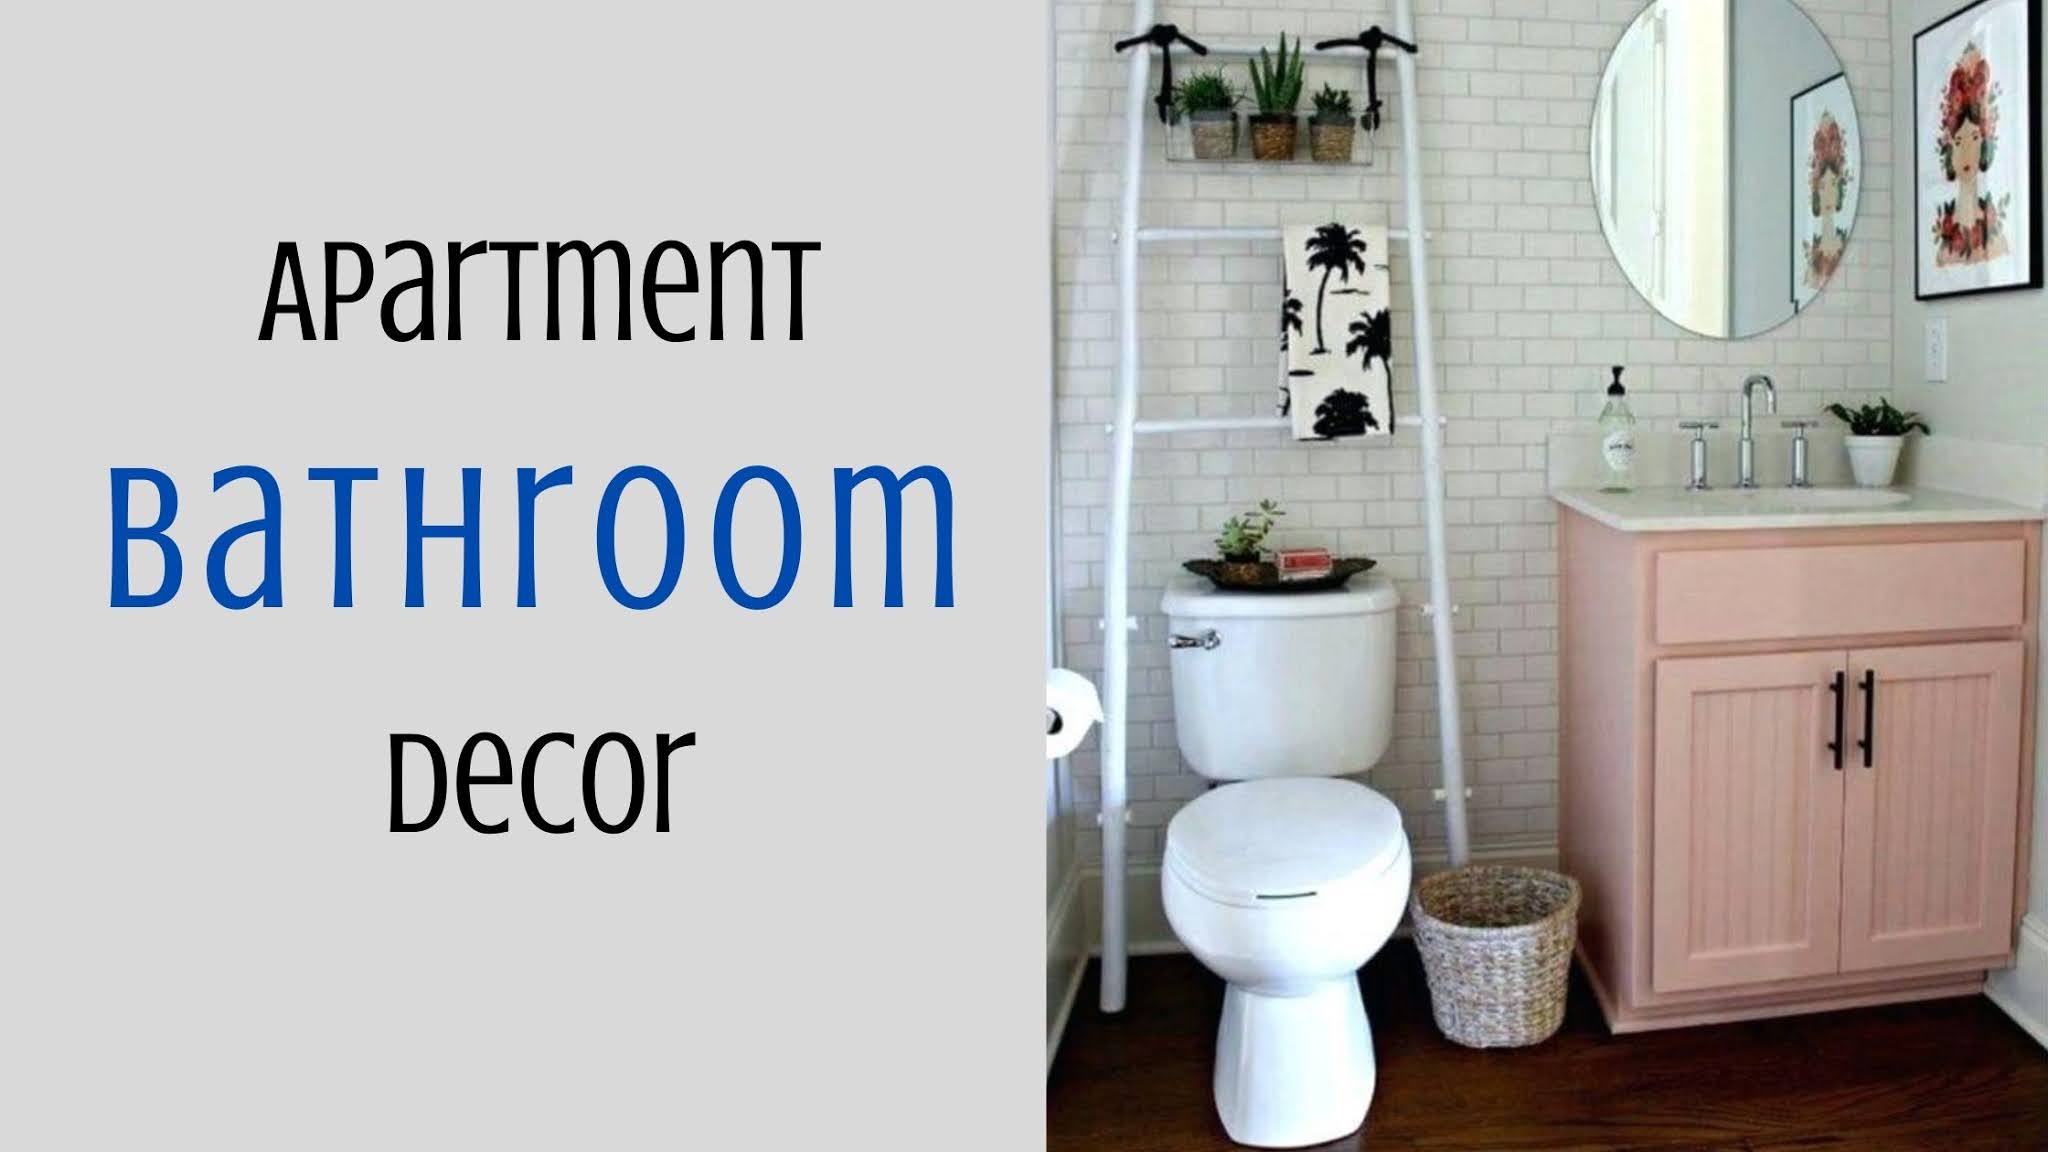 10 Small Apartment Bathroom Decor Ideas, Bathroom Set Ideas For Apartments